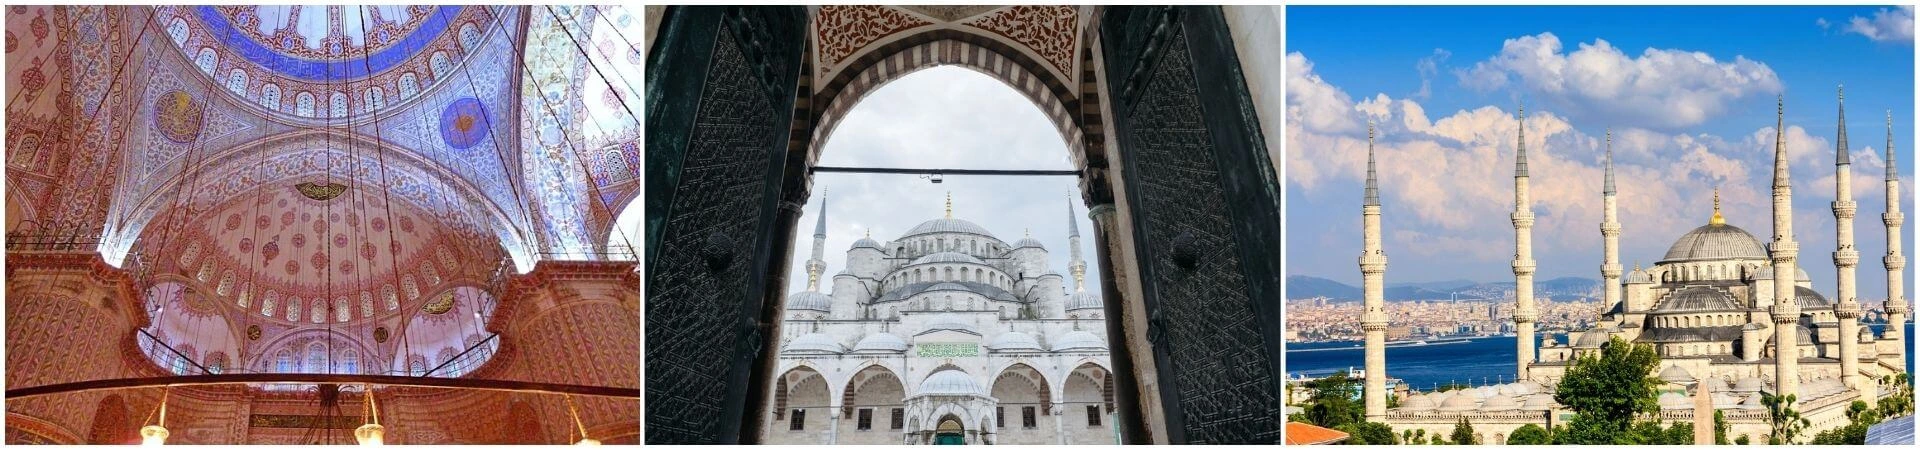 Führung durch die Blaue Moschee Istanbul